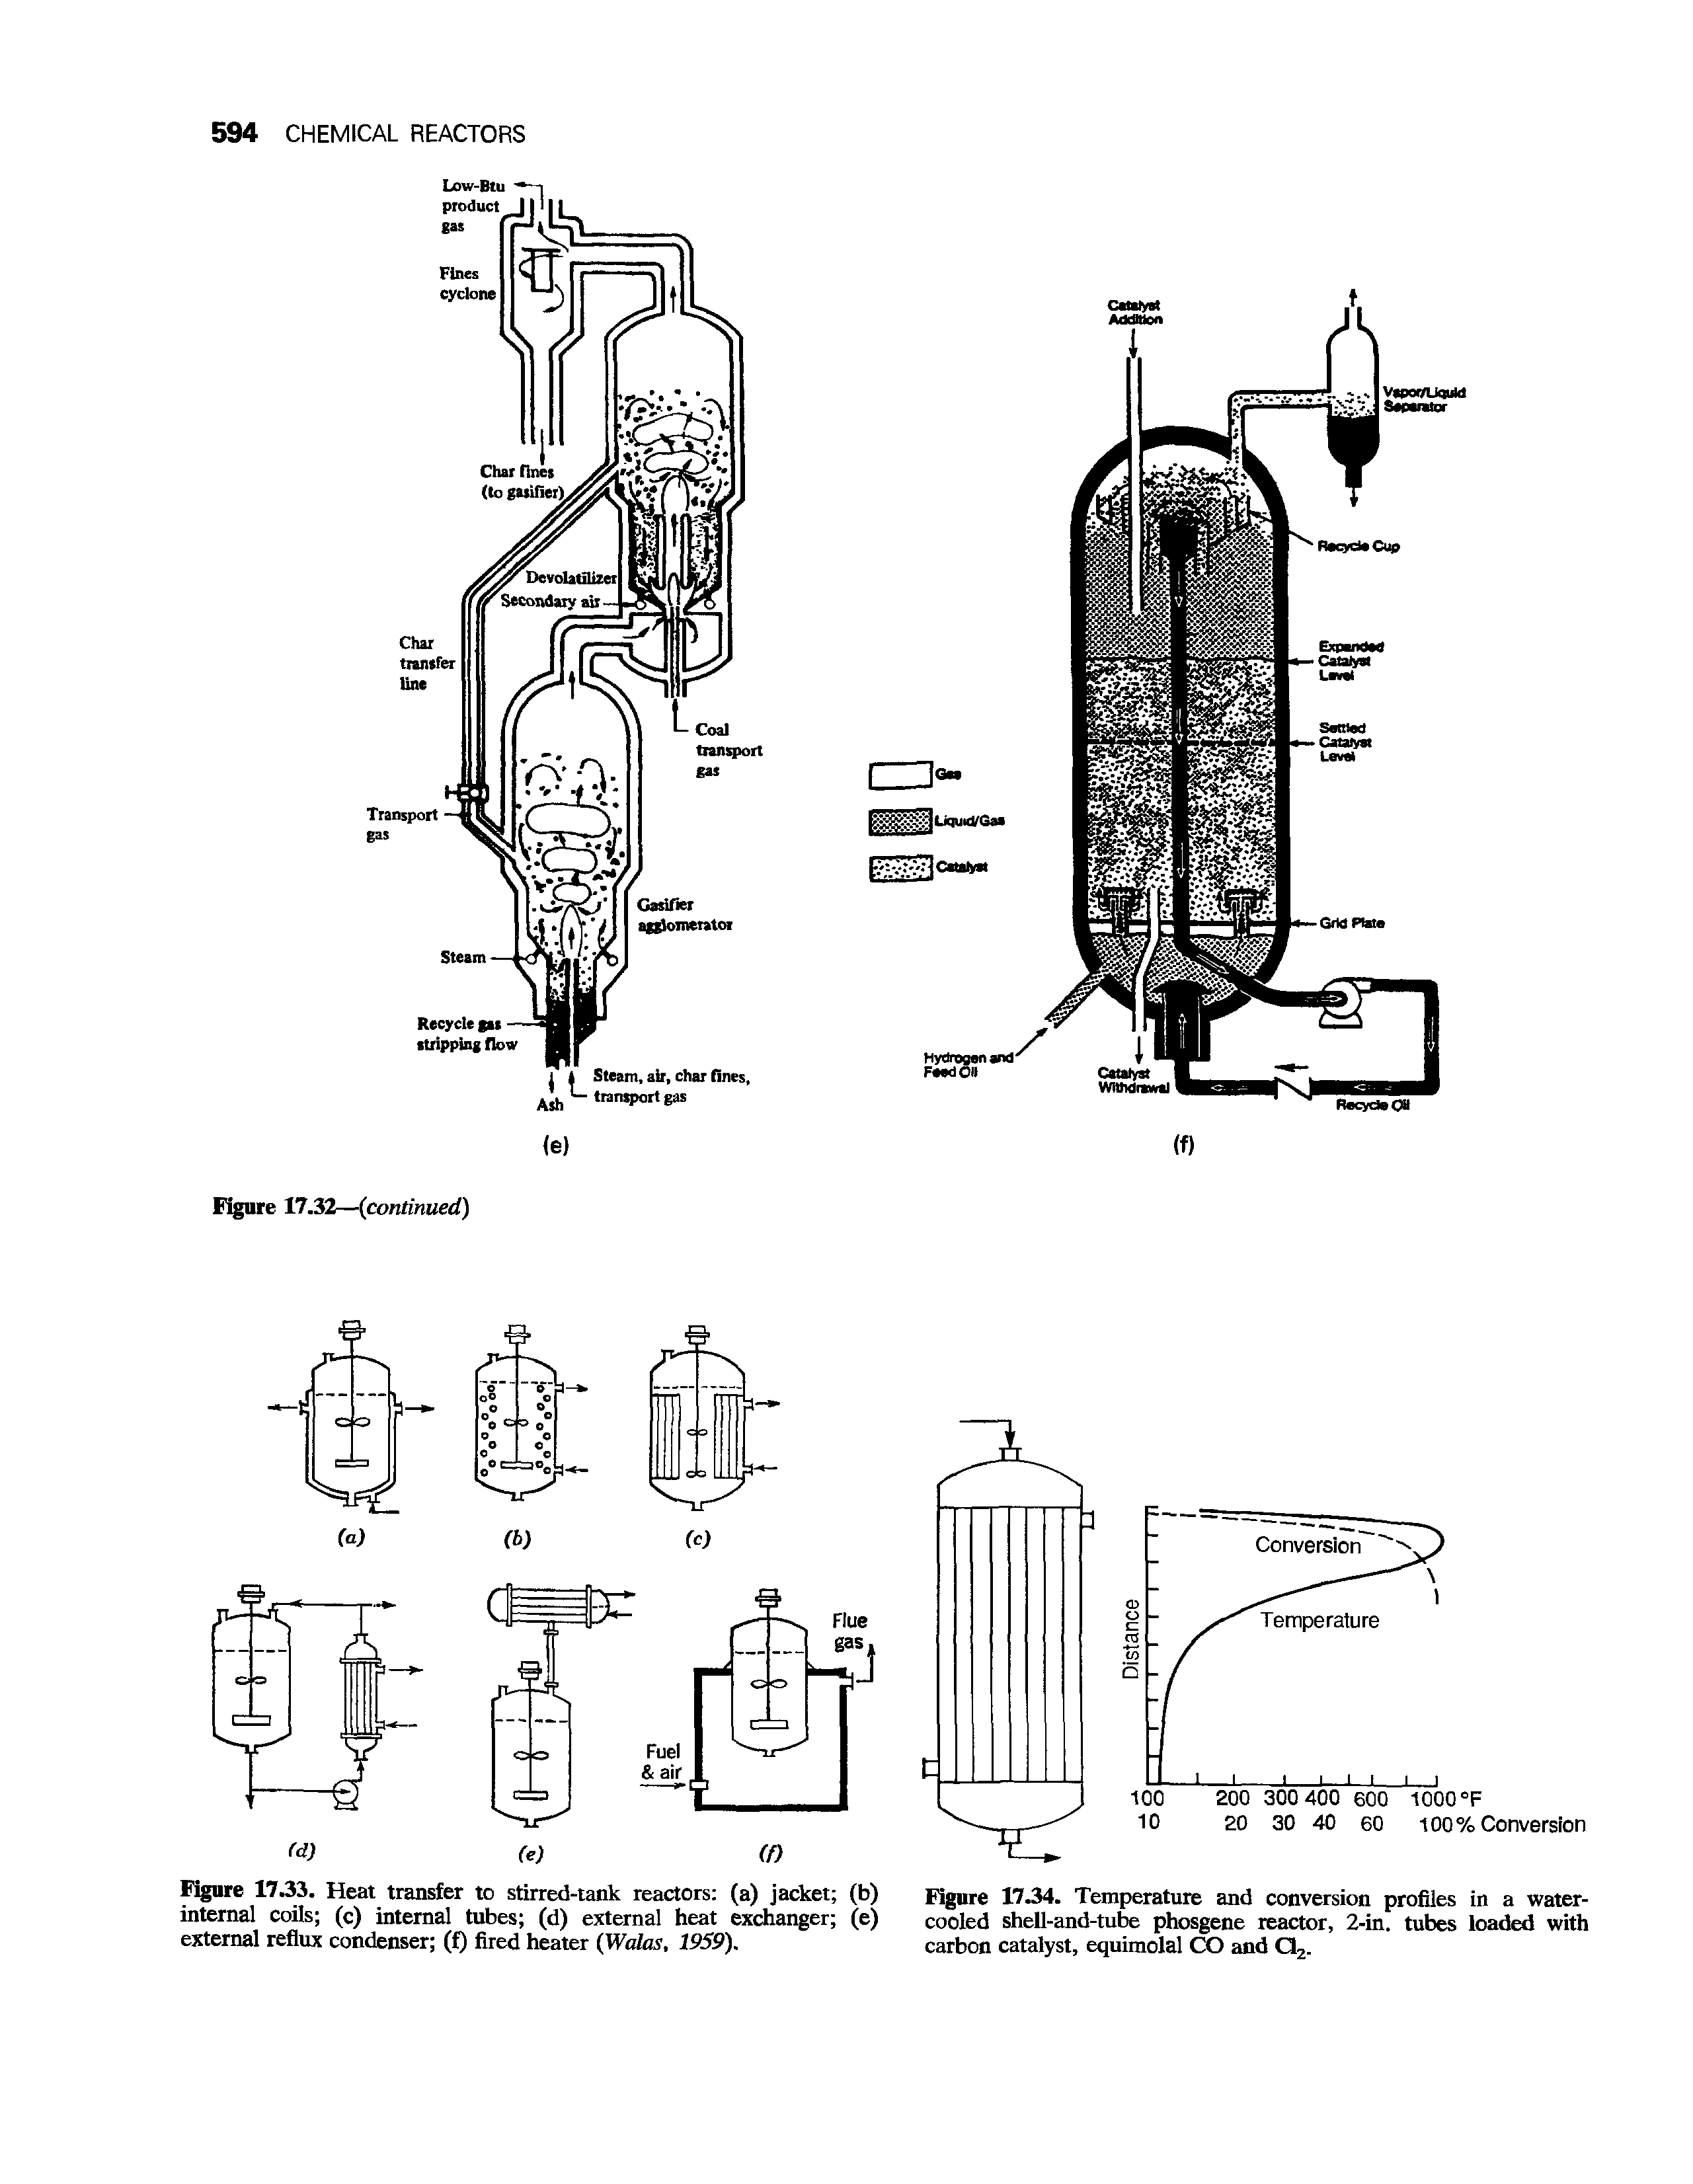 Figure 17.33. Heat transfer to stirred-tank reactors (a) jacket (b) internal coils (c) internal tubes (d) external heat exchanger (e) external reflux condenser (f) fired heater (Walas, 1959).